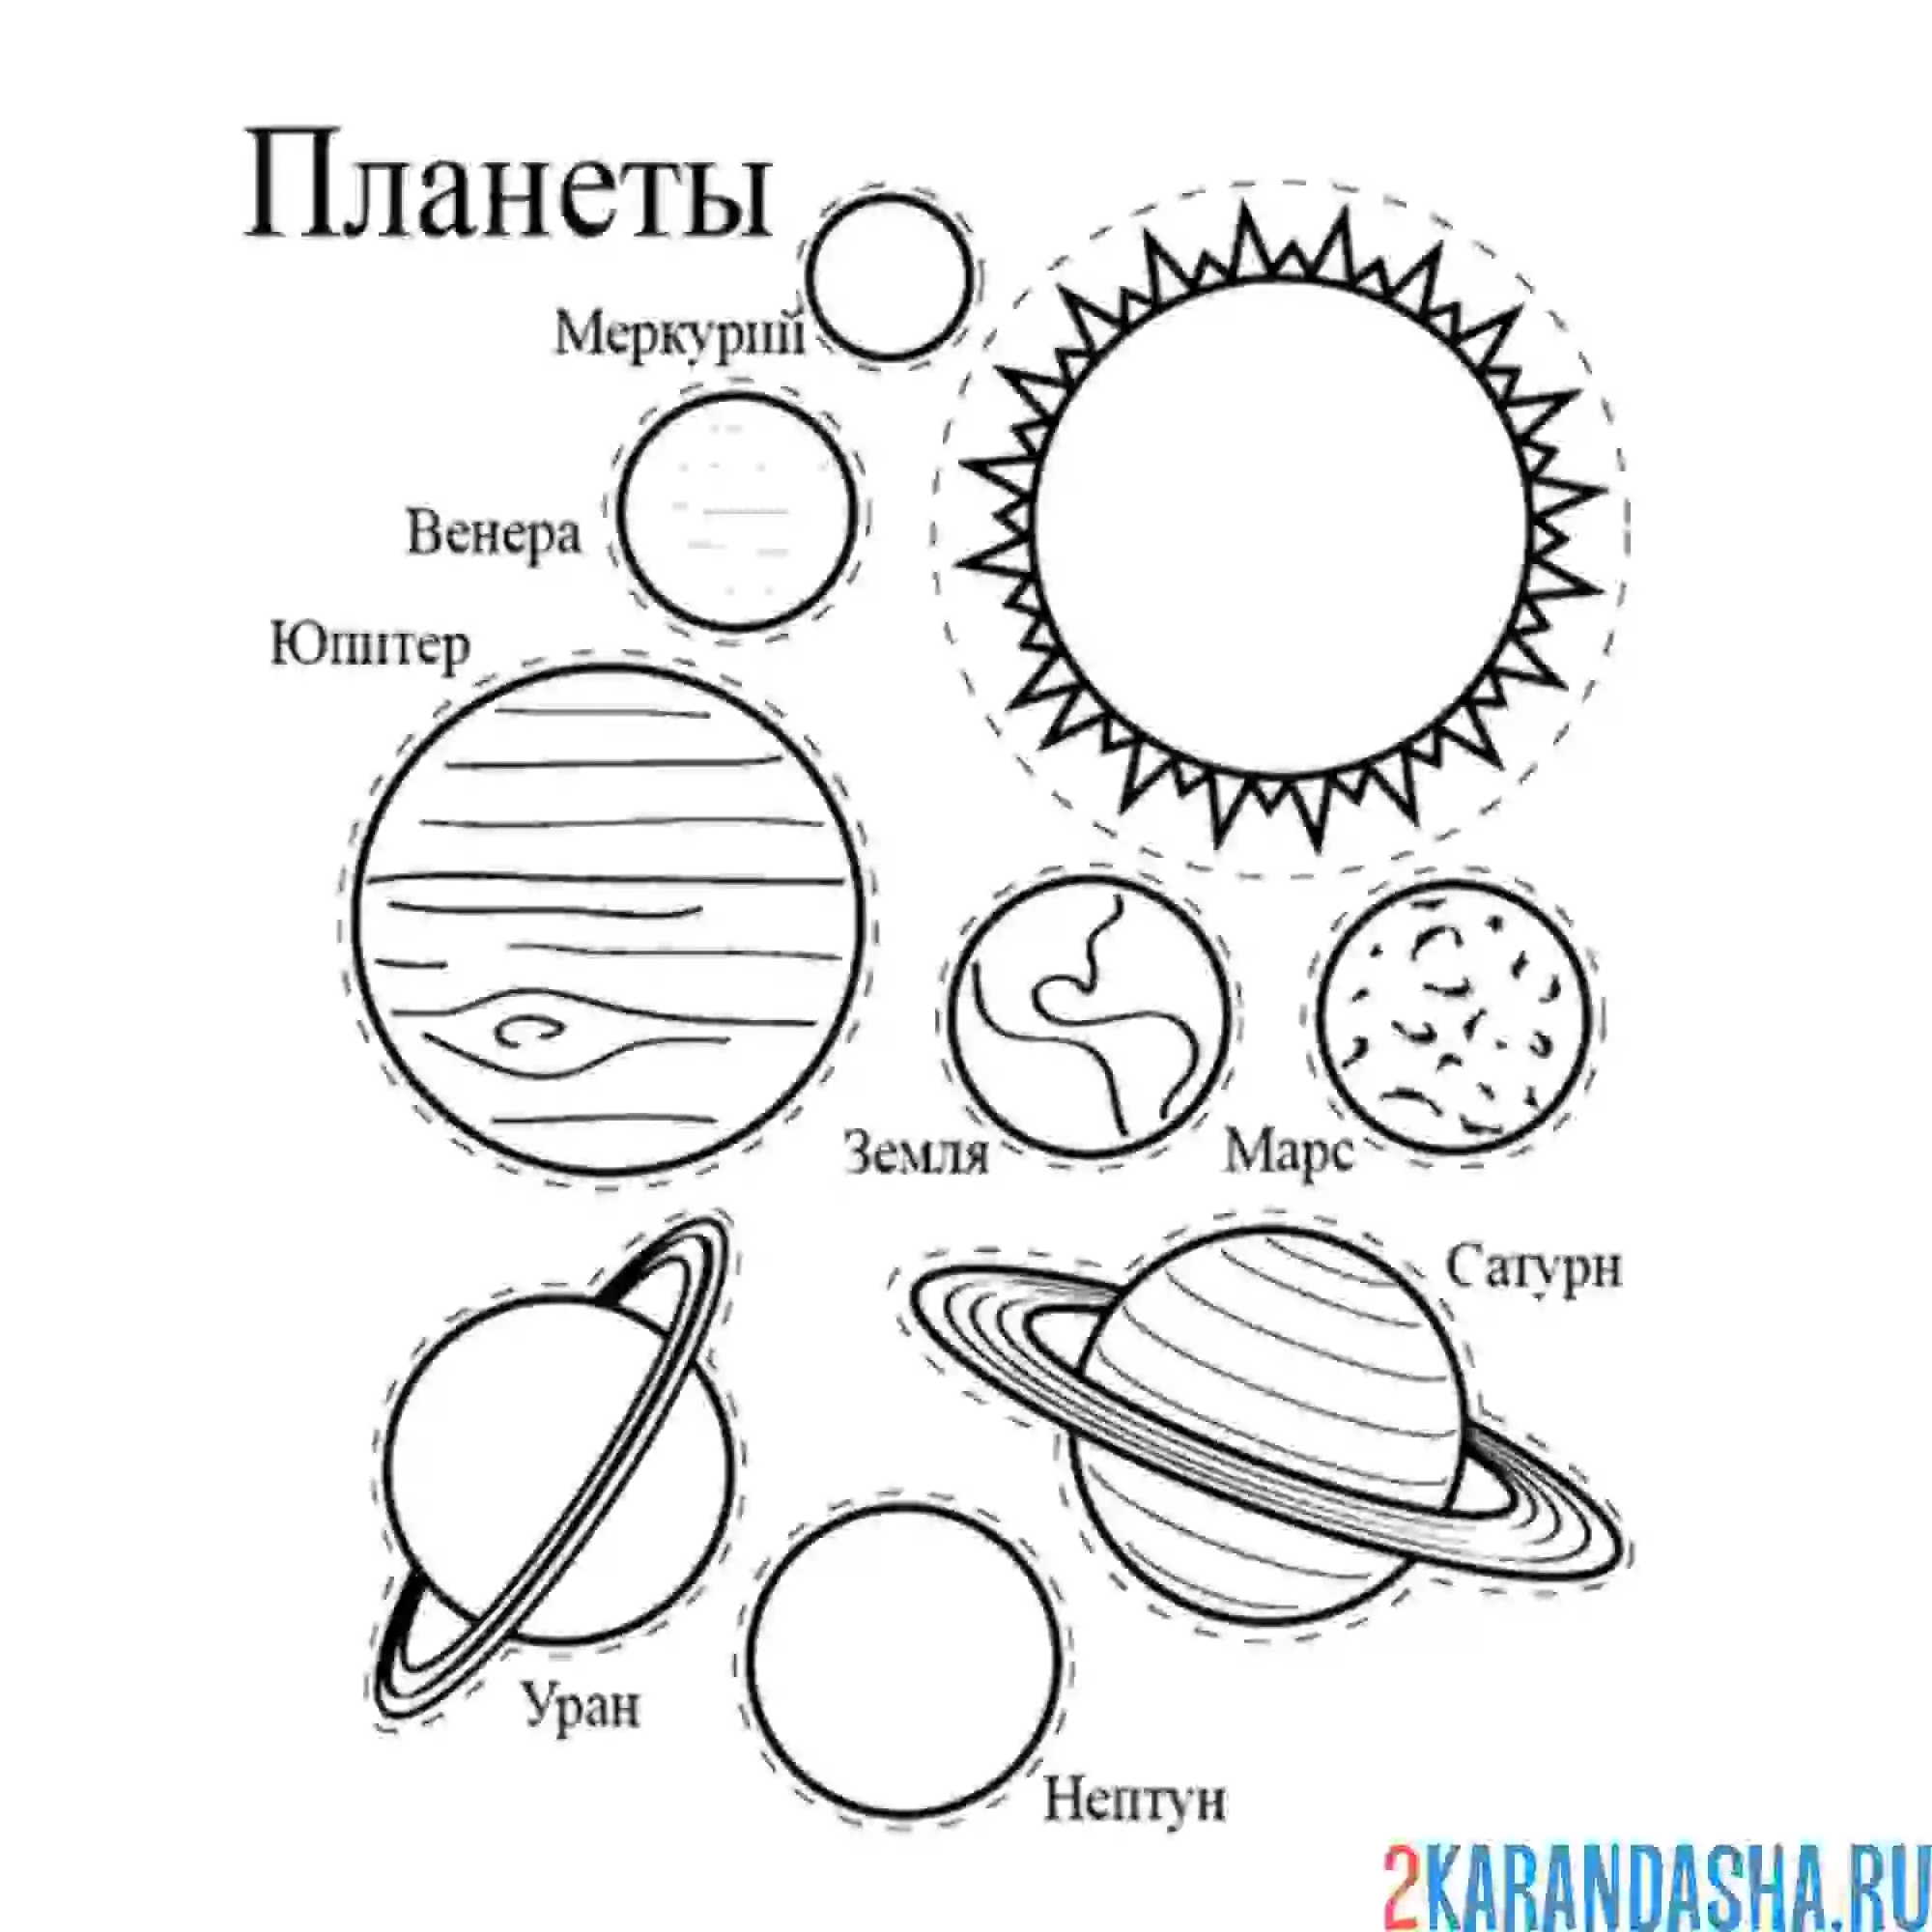 Планеты карандашом для детей. Разукрашка планеты солнечной системы. Раскраска планеты солнечной системы для детей. Раскраски планеты солнечной системы для детей Меркурий. Раскраска планет солнечной системы для детей с названиями.